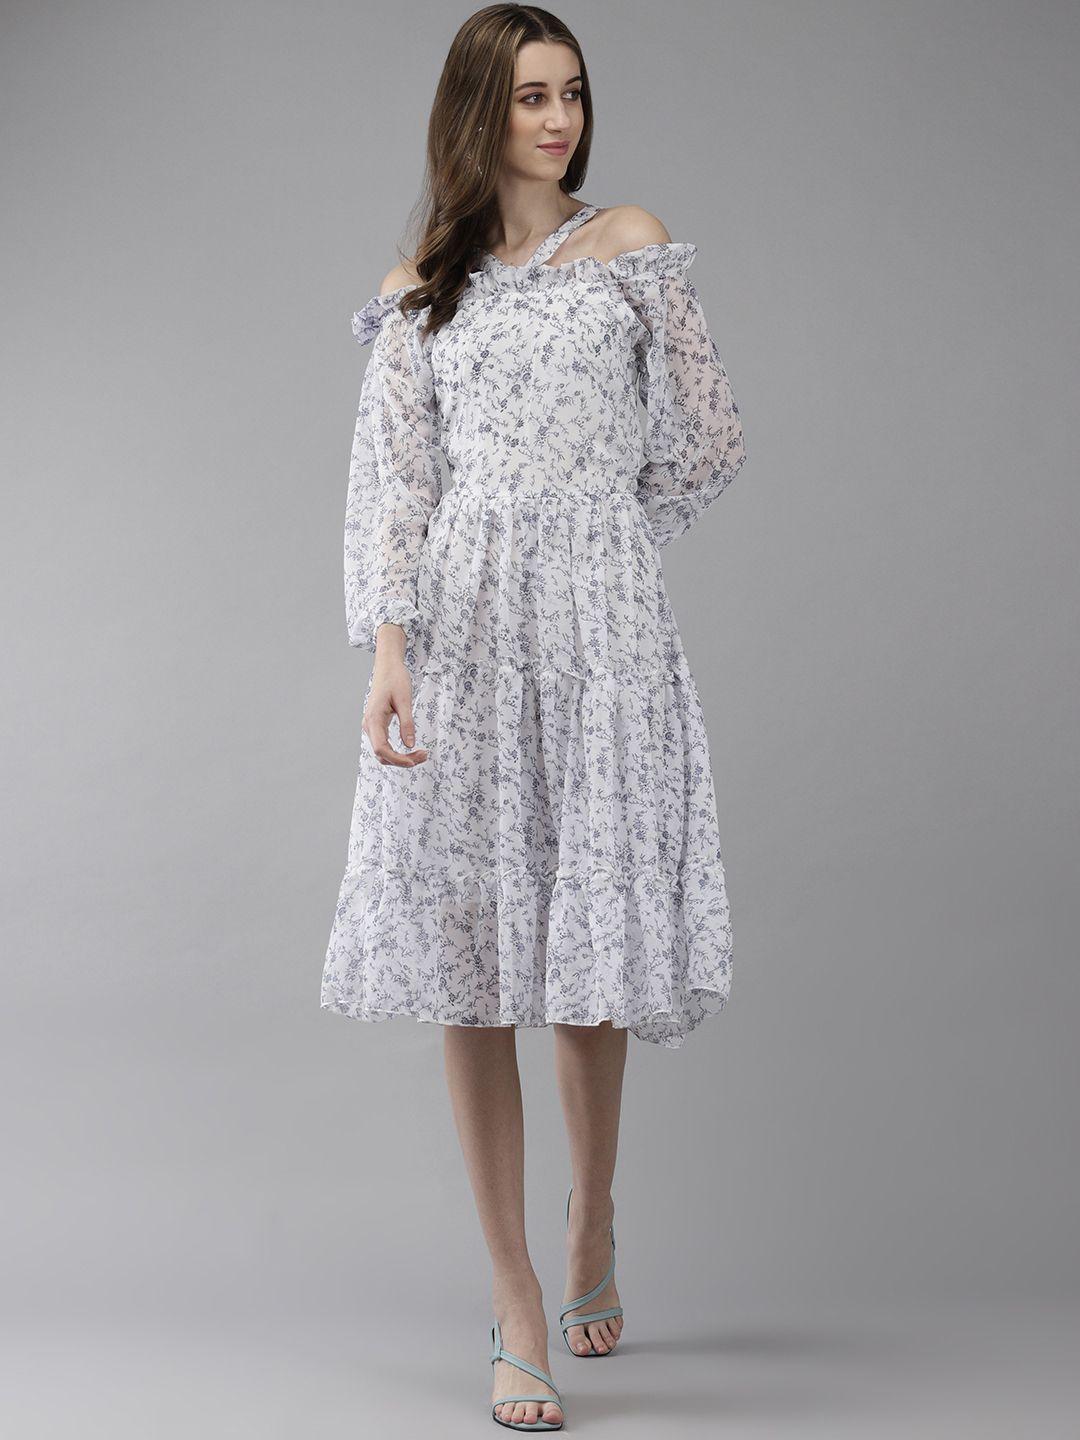 aarika floral print off-shoulder puff sleeve georgette a-line dress